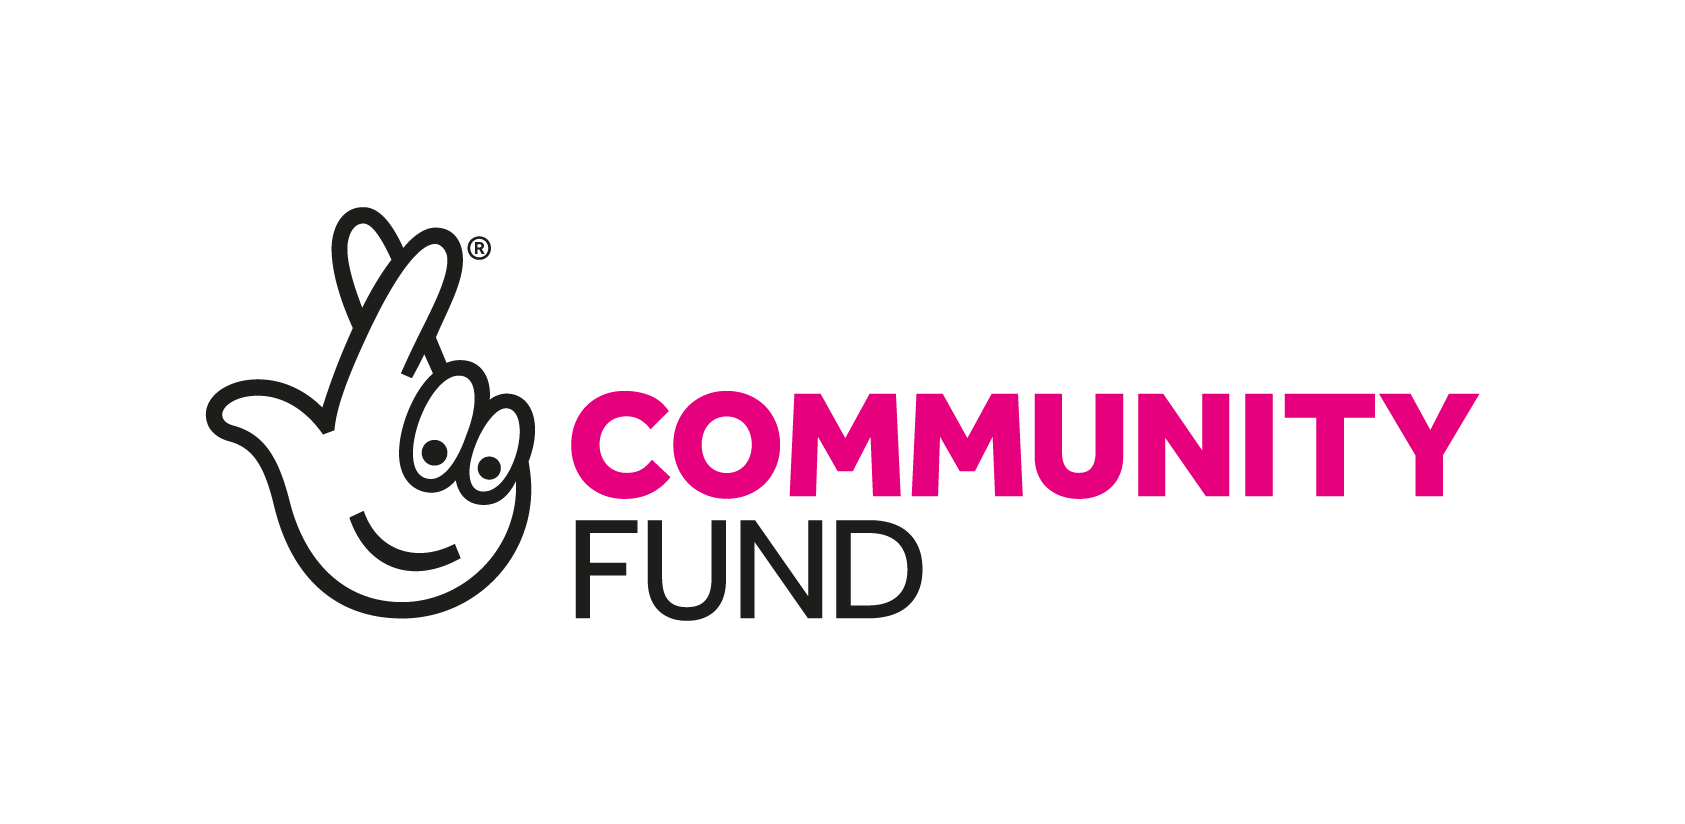 Community Fund logo.